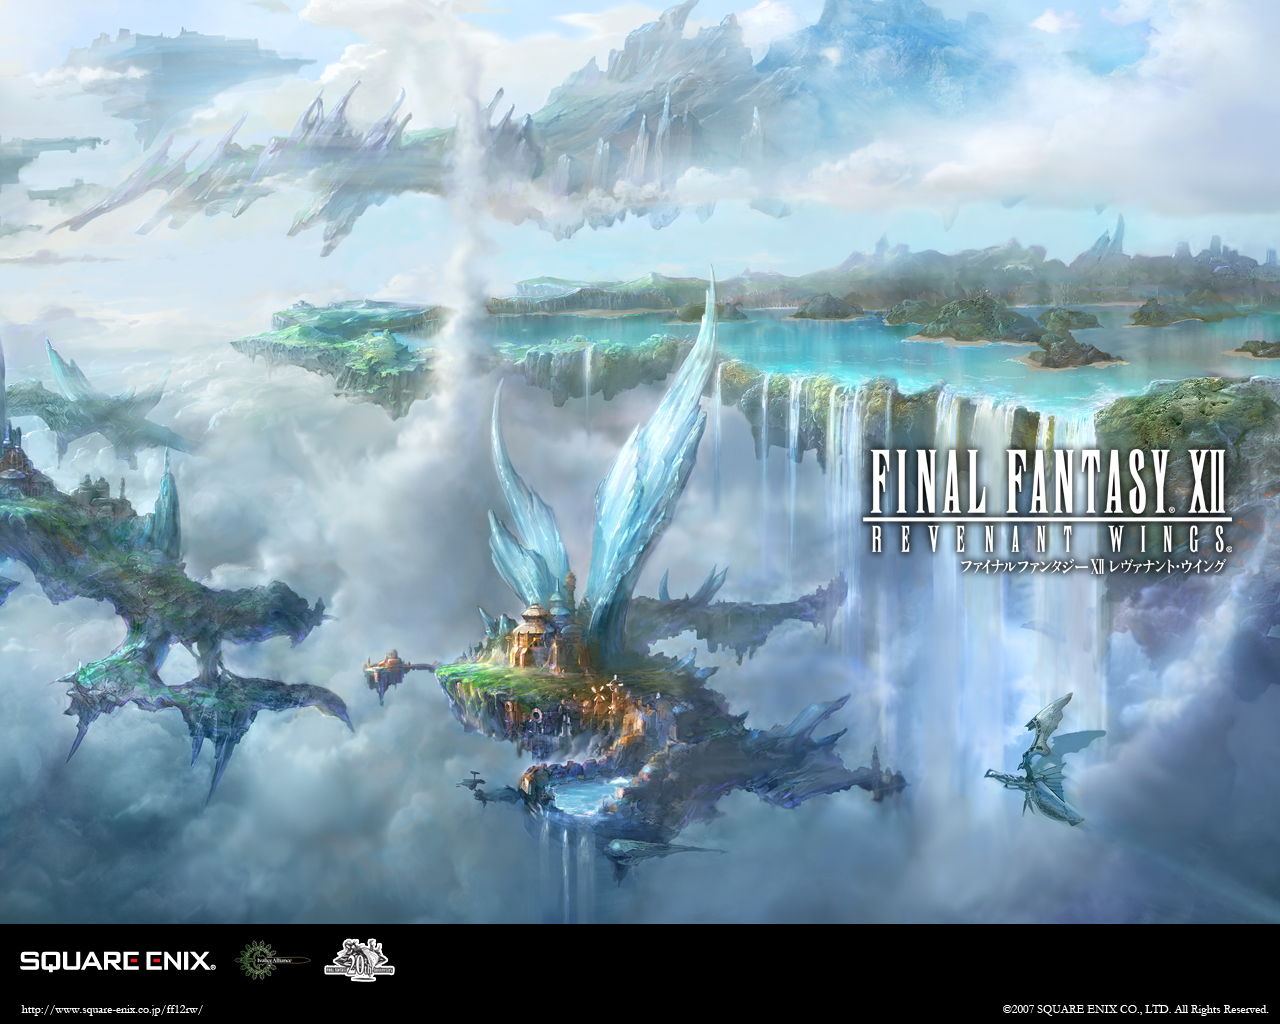 Final Fantasy Xii Revenant Wings Wallpaper